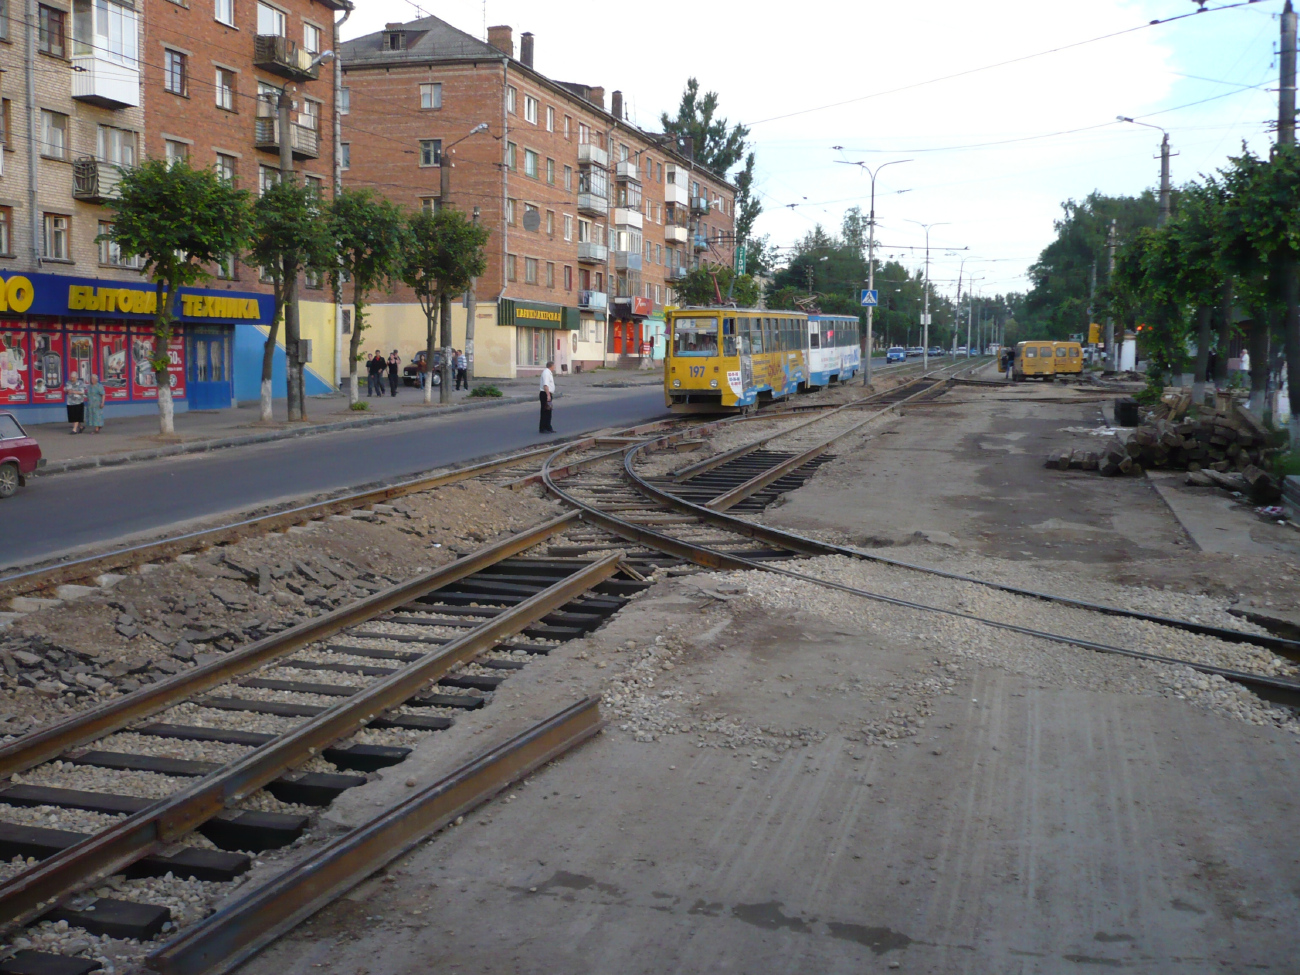 Смоленск — Строительство, ремонты и реконструкции; Смоленск — Трамвайные линии, инфраструктура и конечные станции